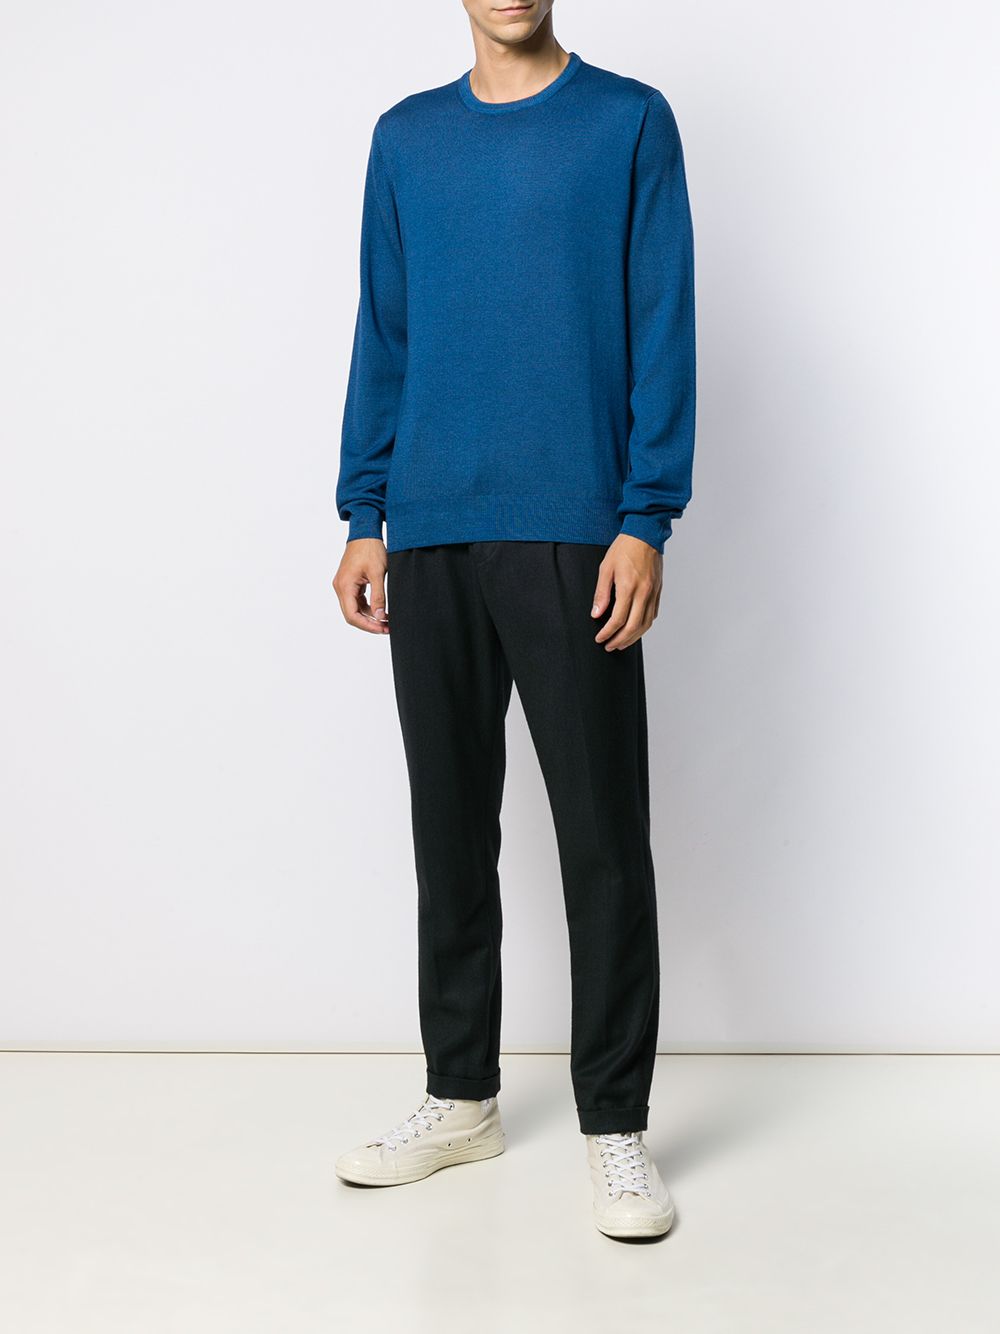 D4.0 Sweater met ronde hals - Blauw